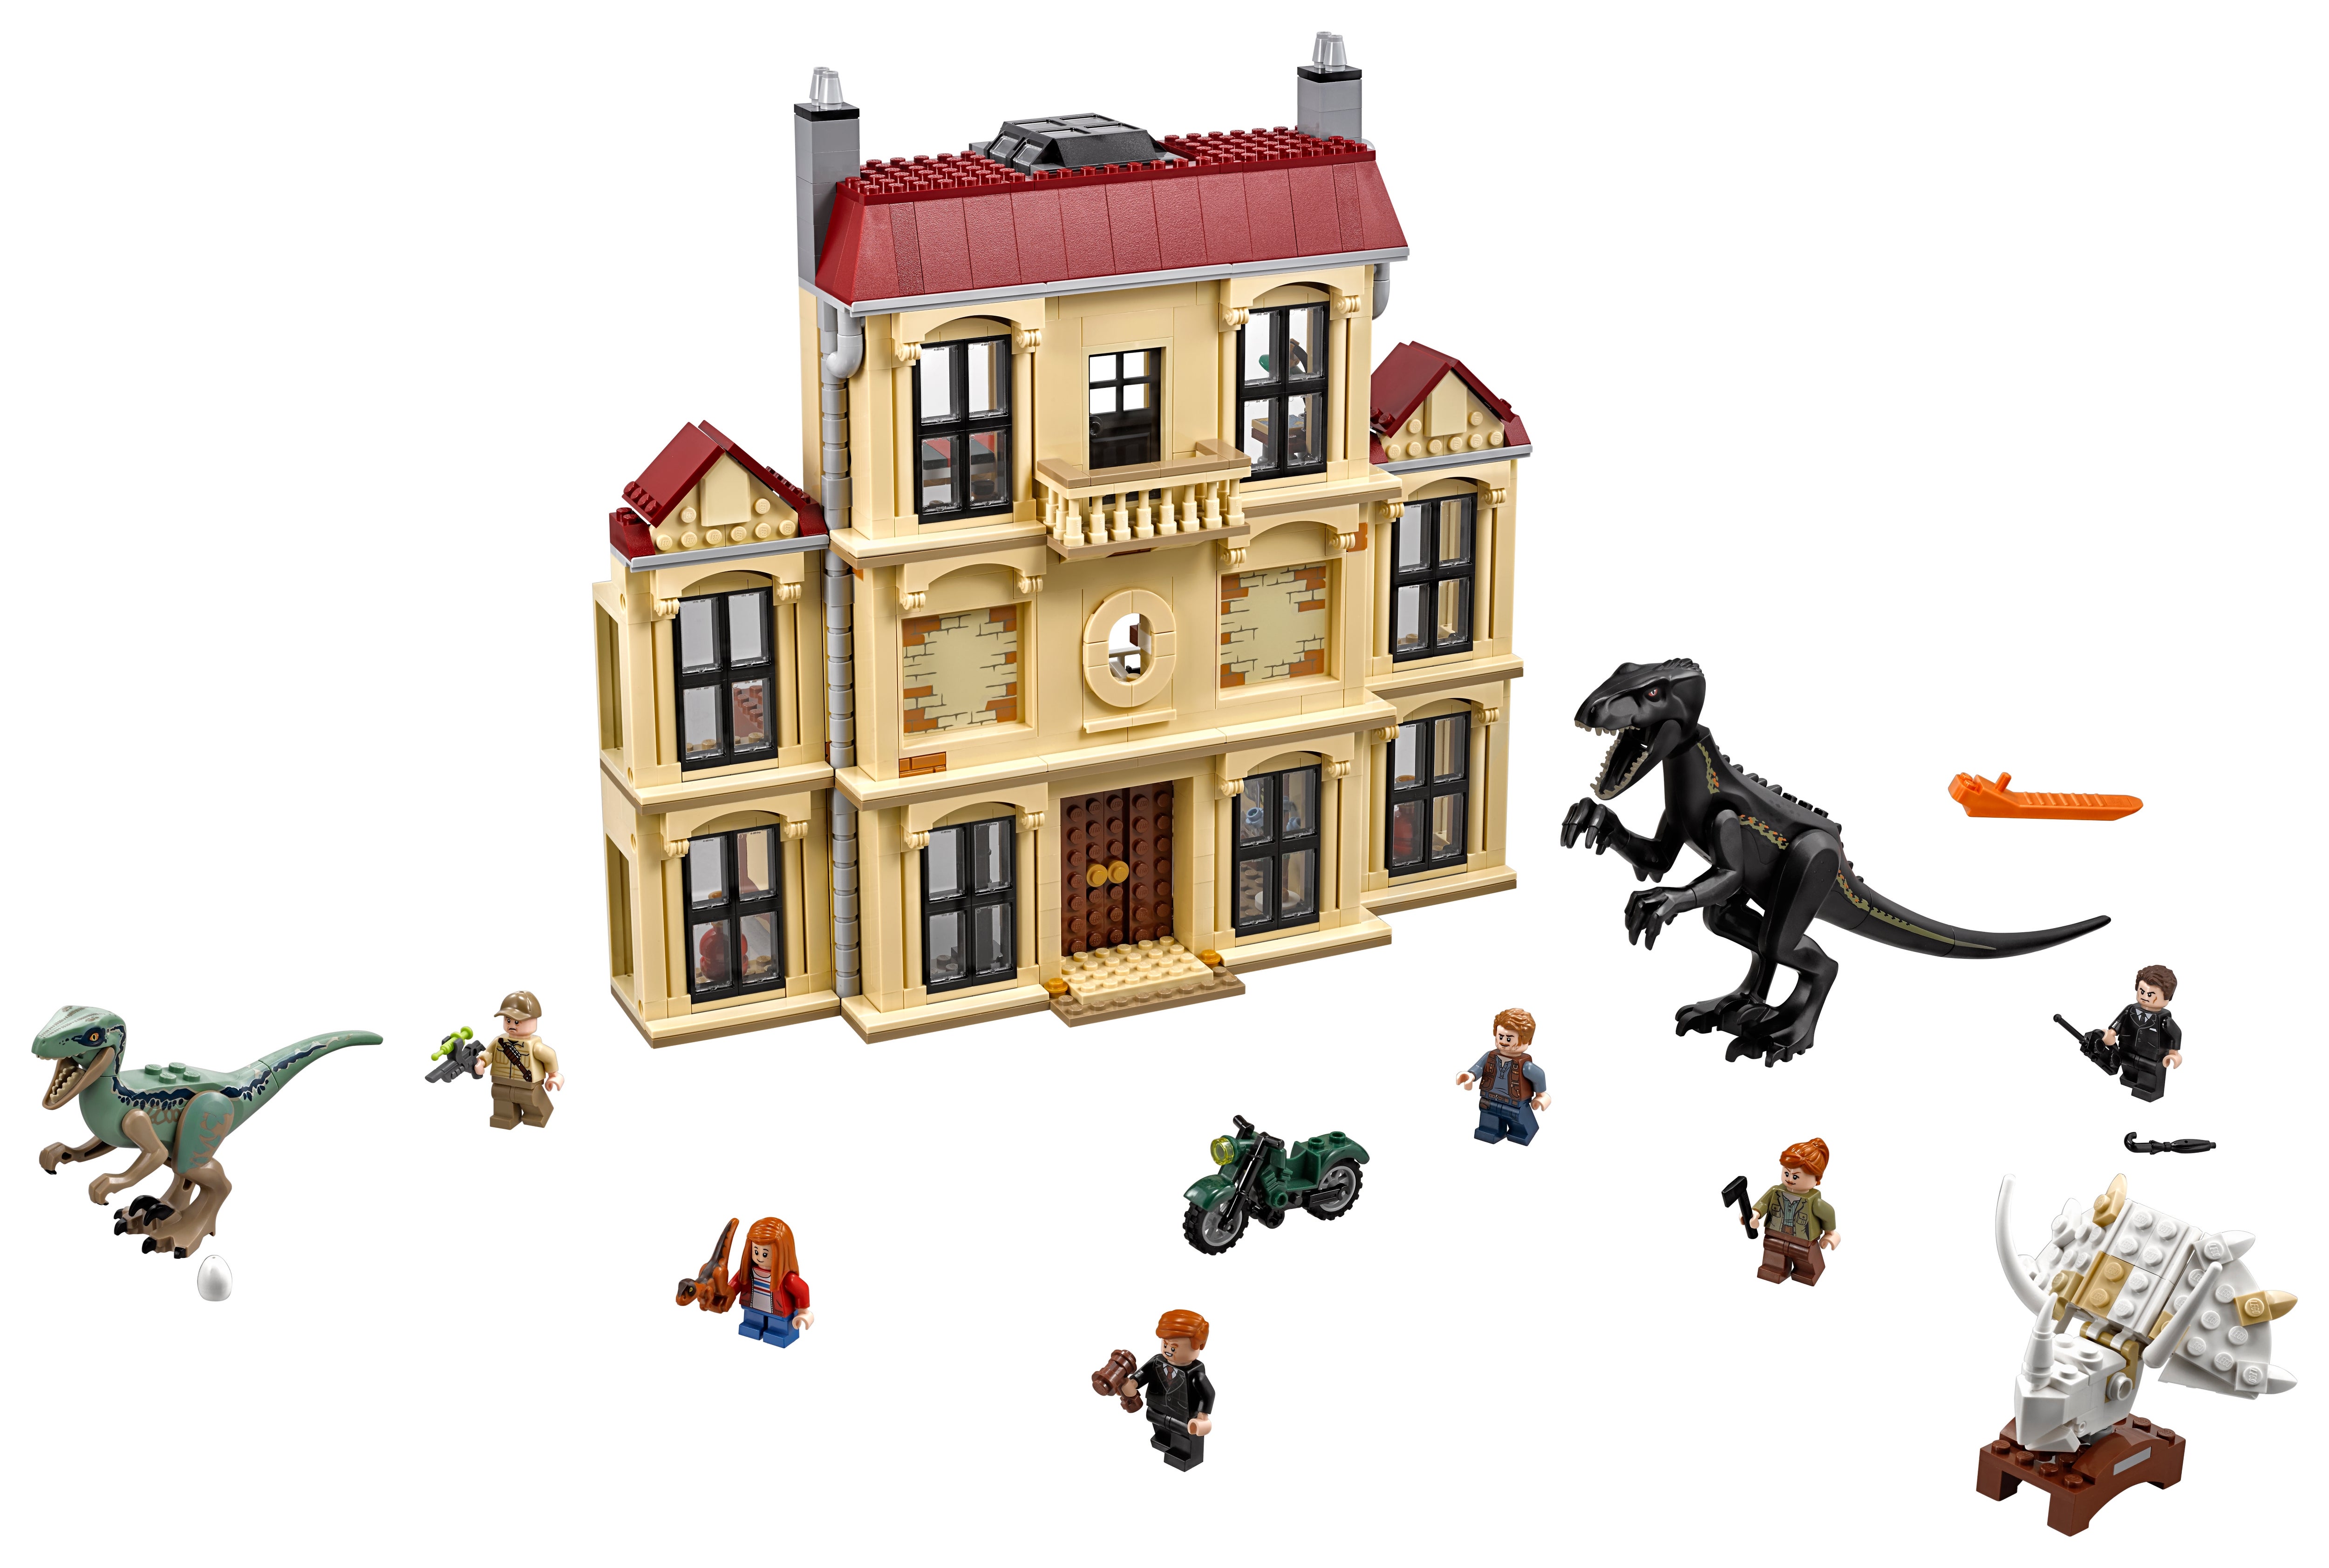 for sale online LEGO Jurassic World Indoraptor Rampage at Lockwood Estate 2018 75930